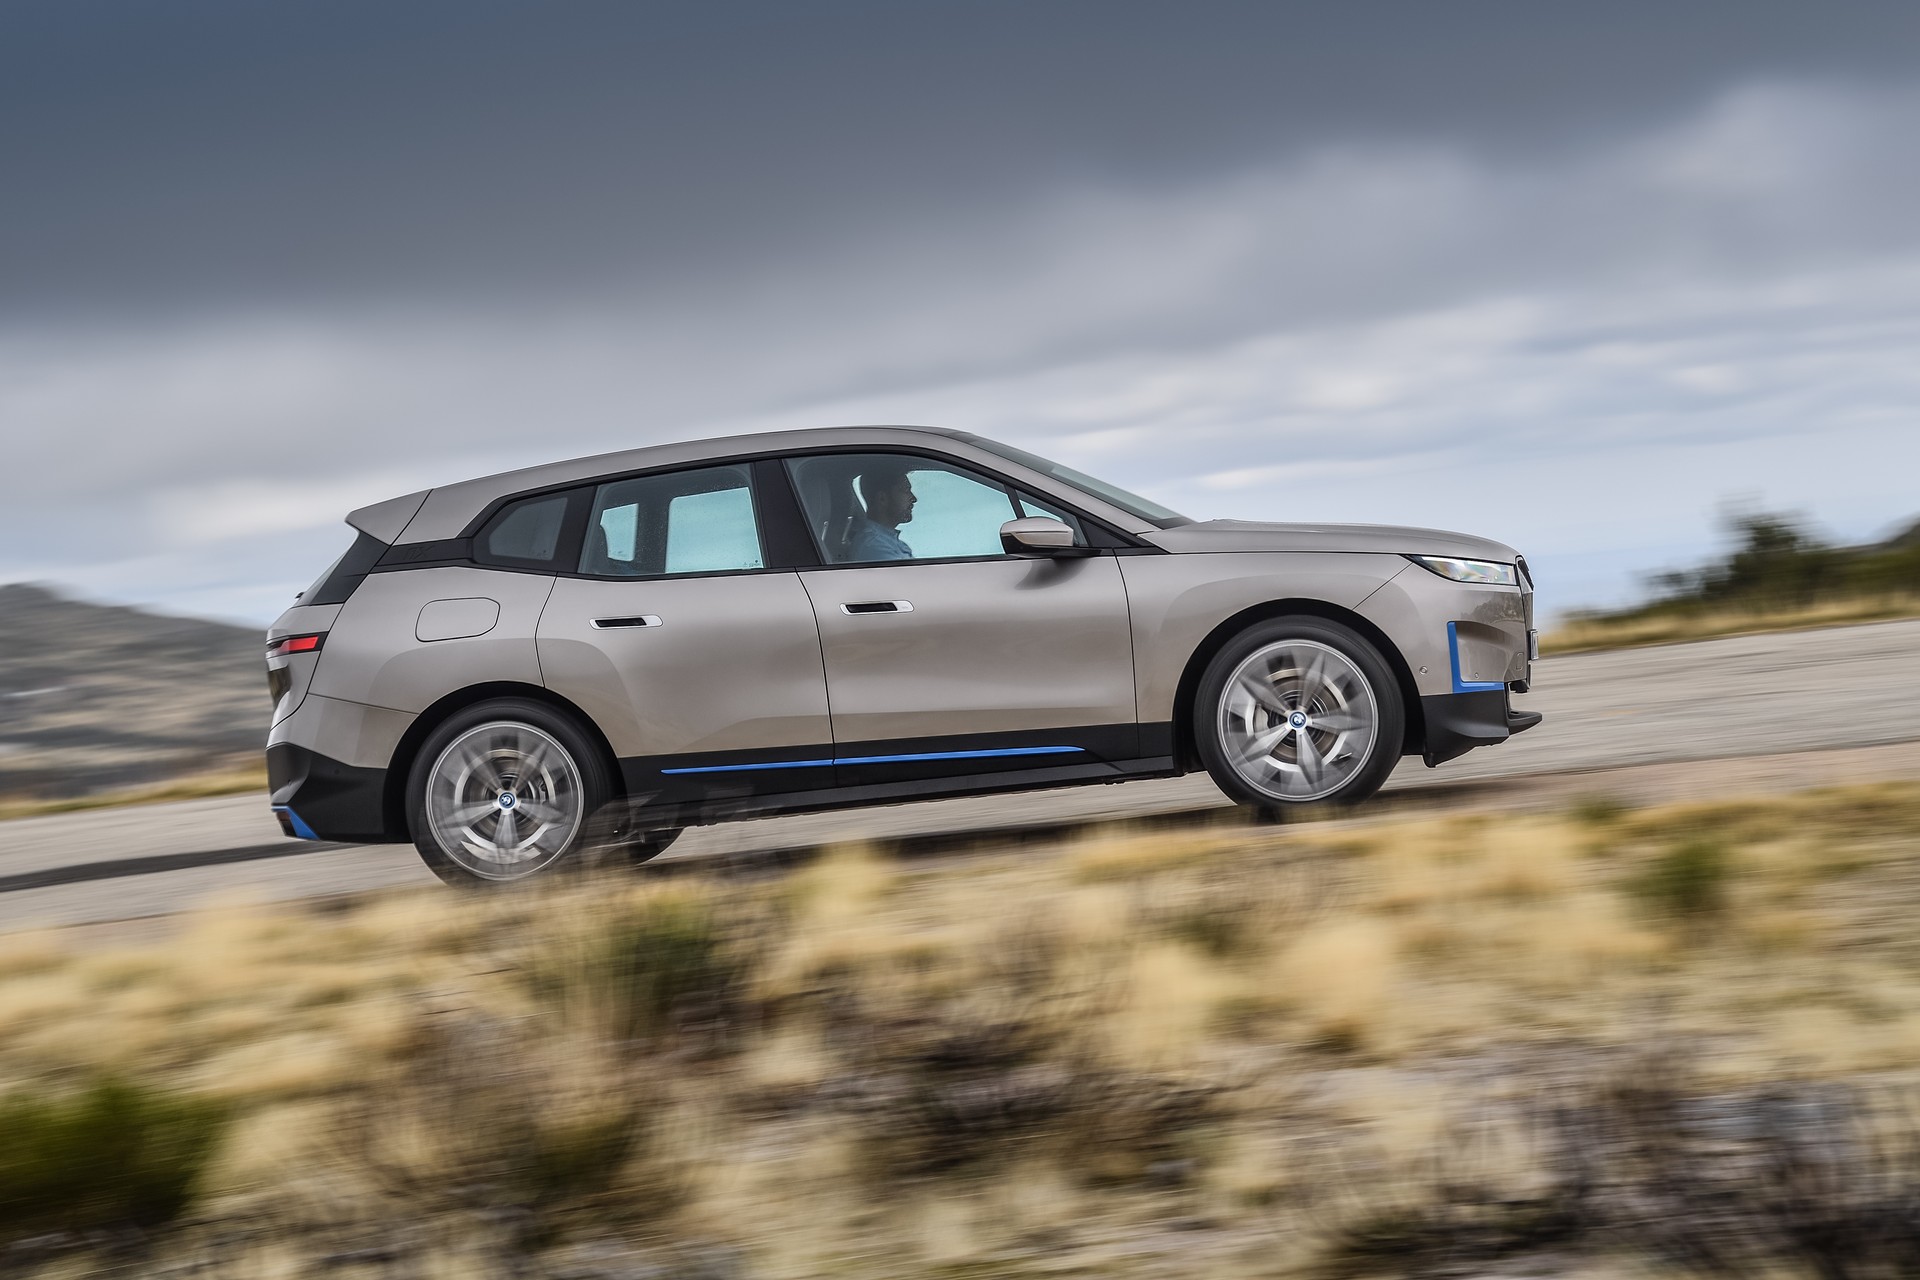 BMW va adapter toutes ses usines allemandes à la production de voitures électriques